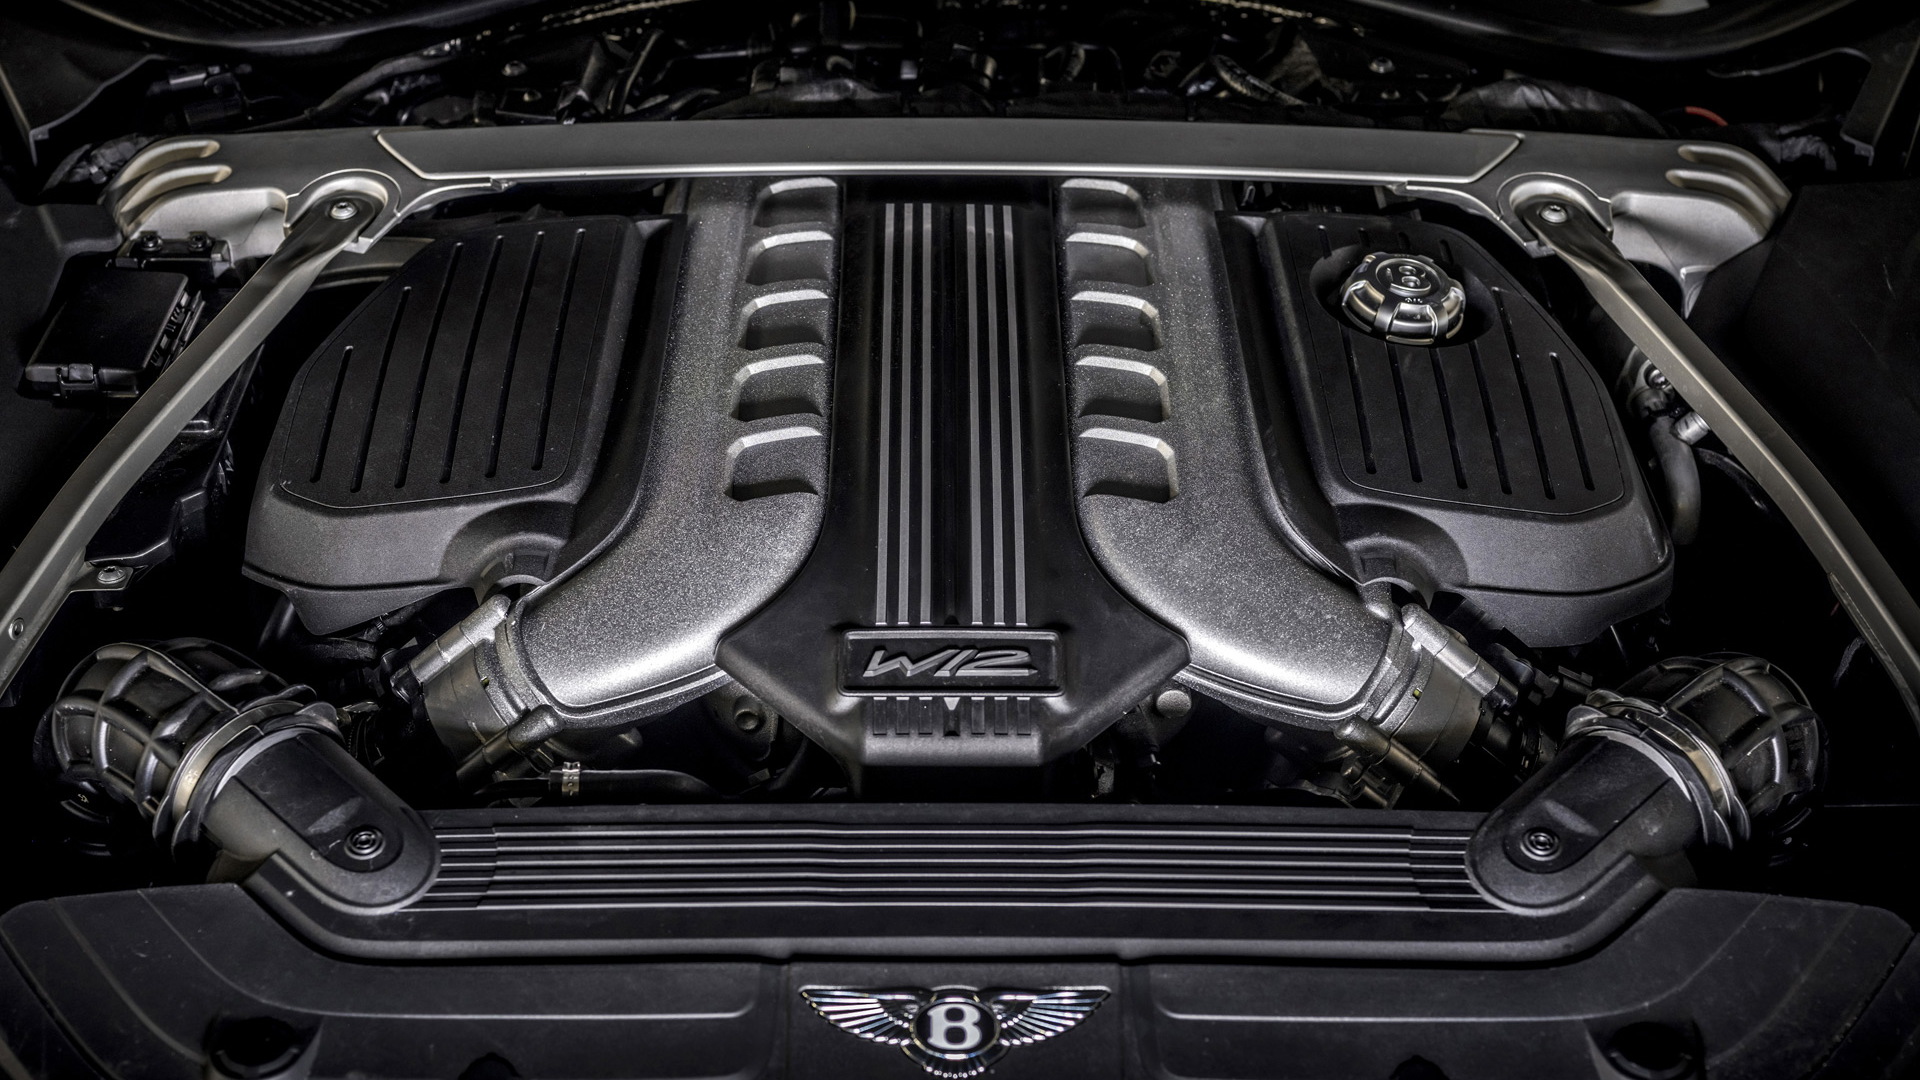 Bentley W-12 engine